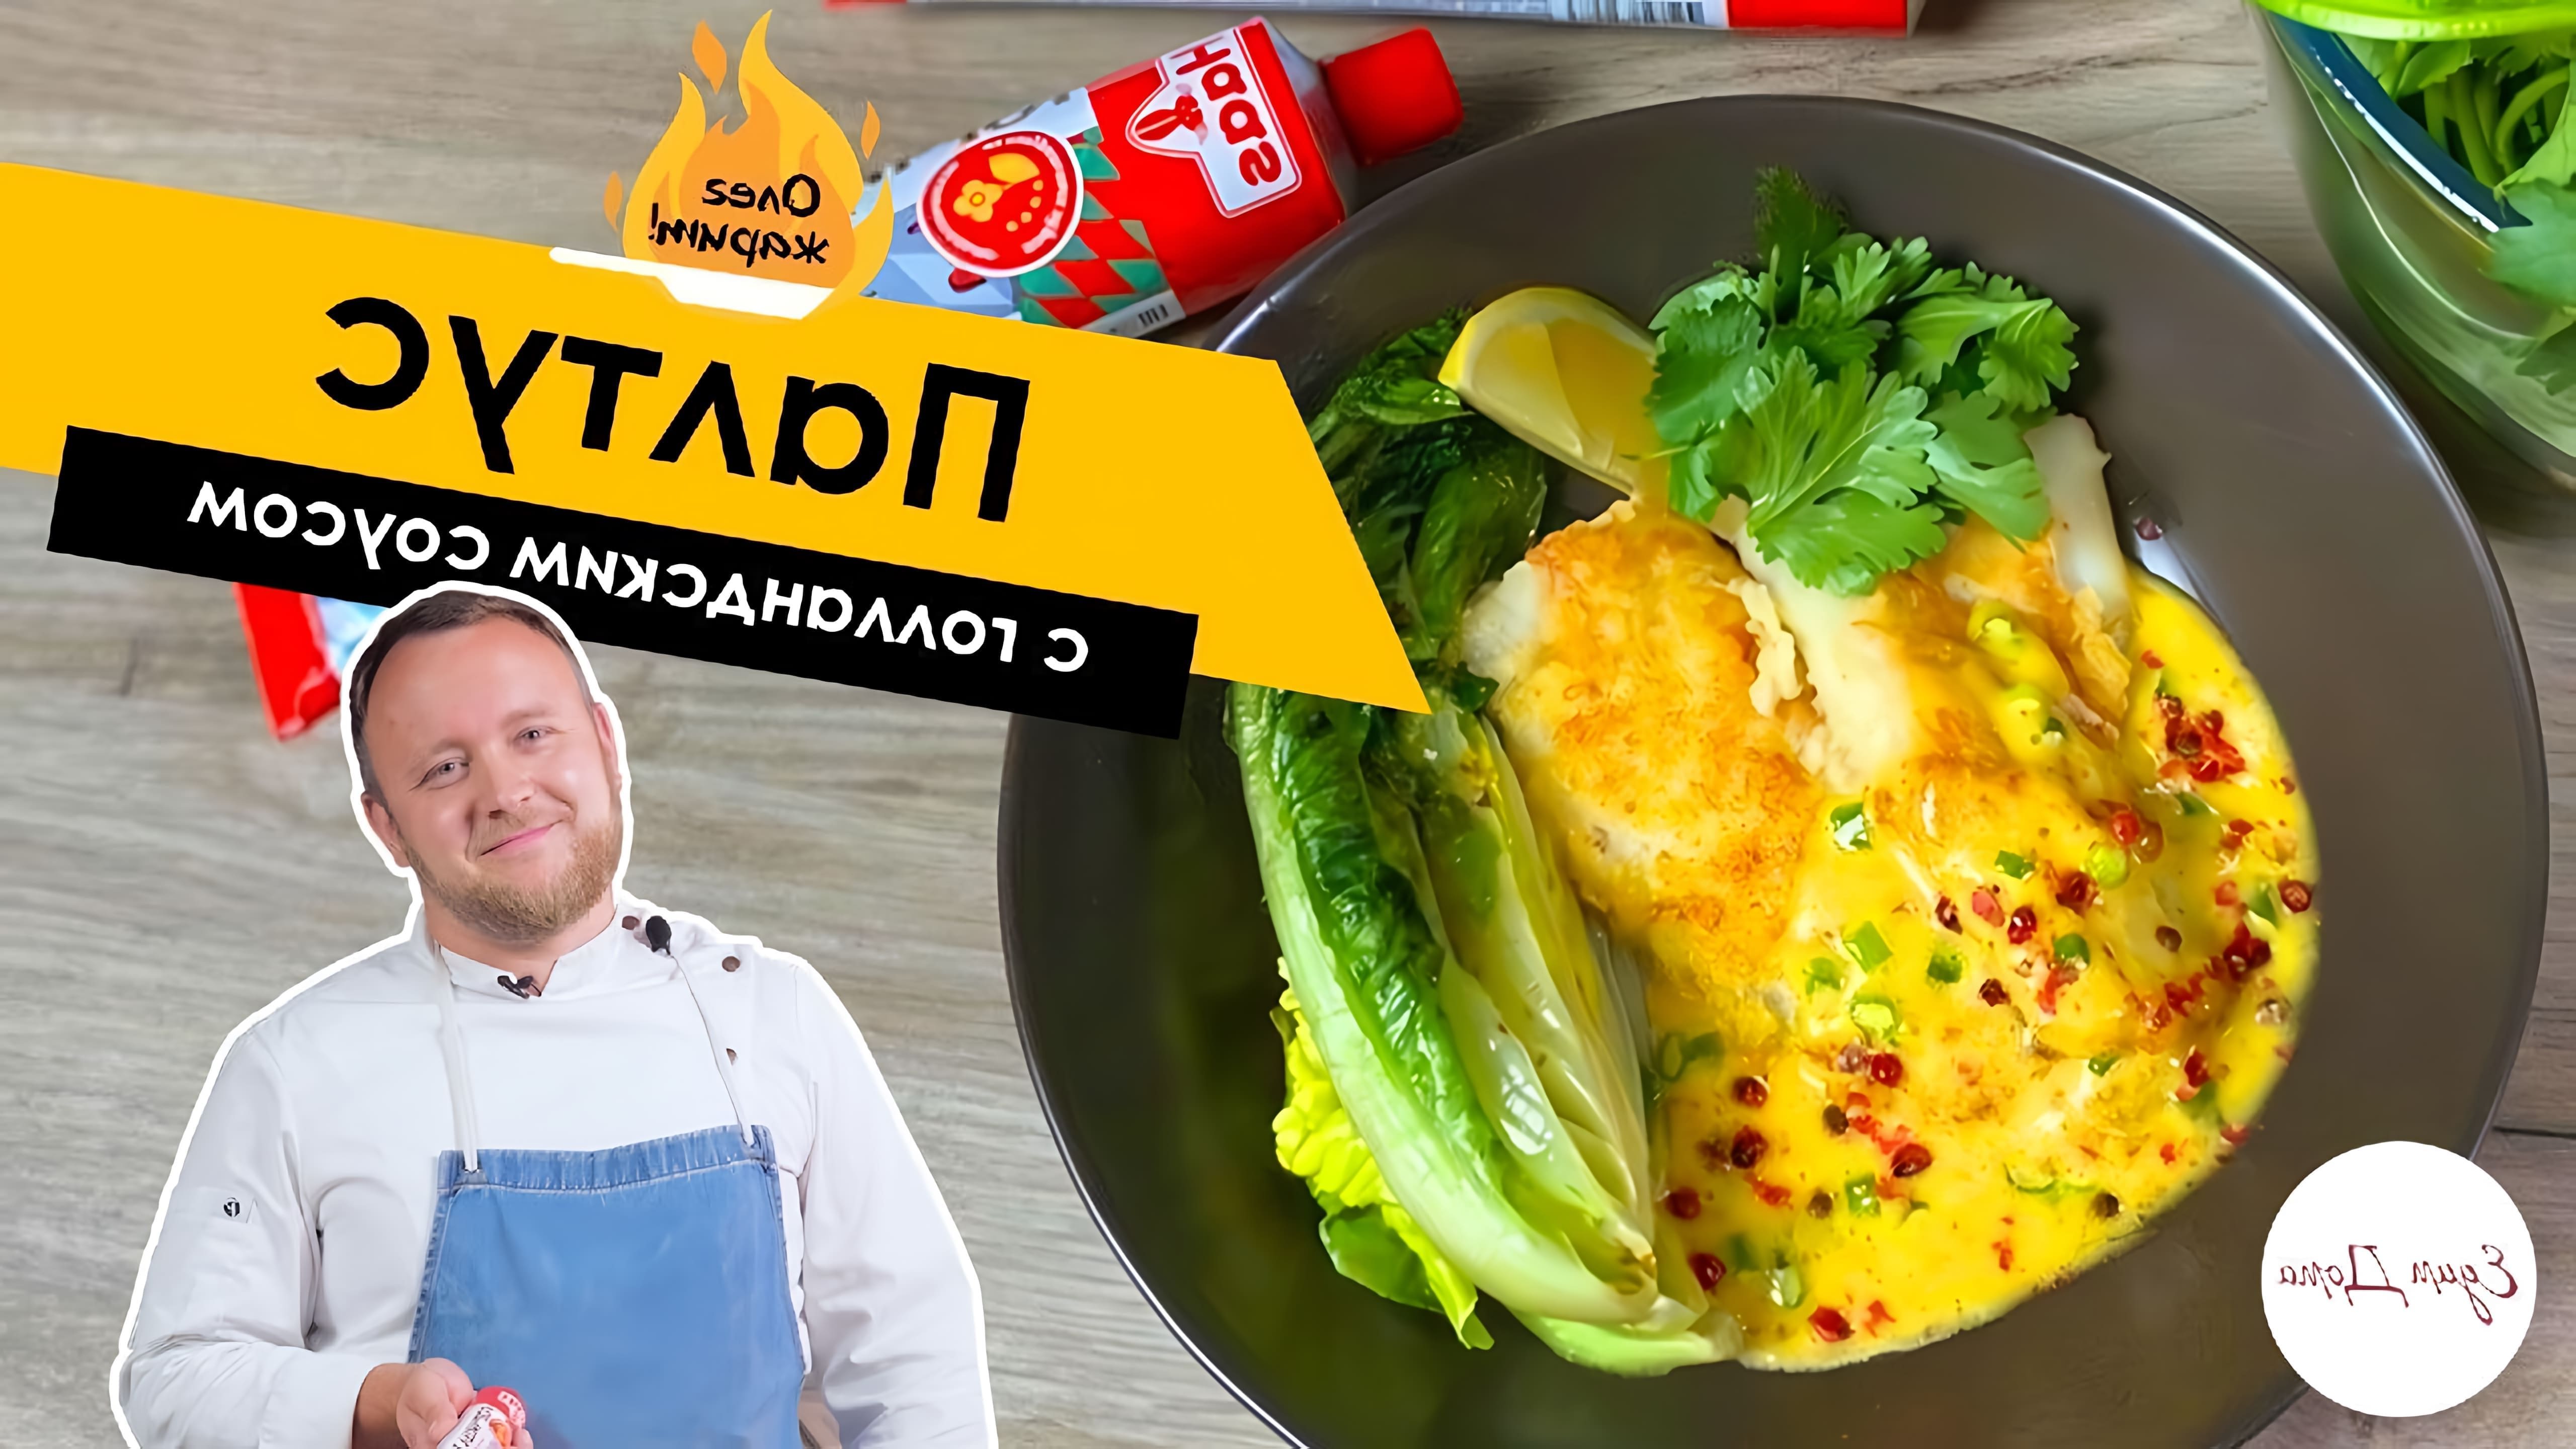 В этом видео Олег Томилин готовит палтус с голландским соусом и салатом романо